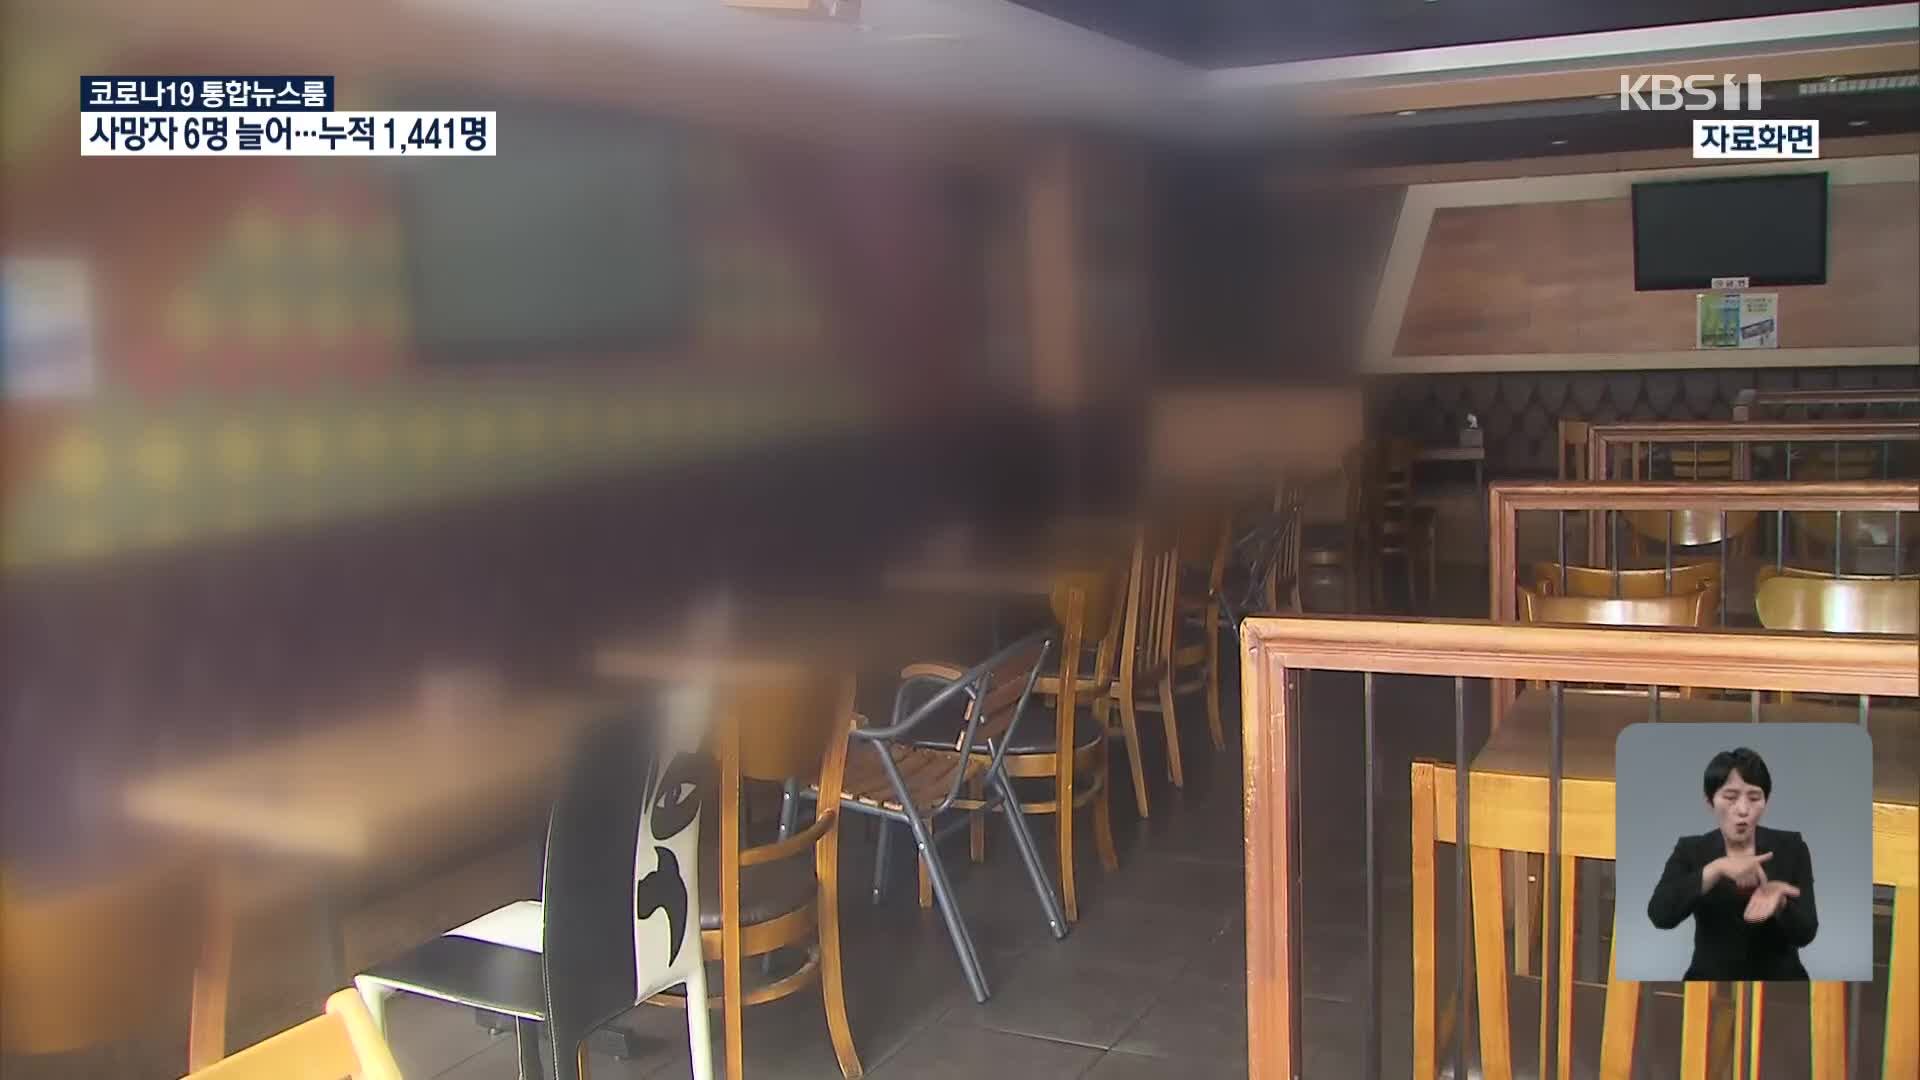 서울, 25일 만에 최다 188명 확진…광진구 ‘음식점’ 집단감염